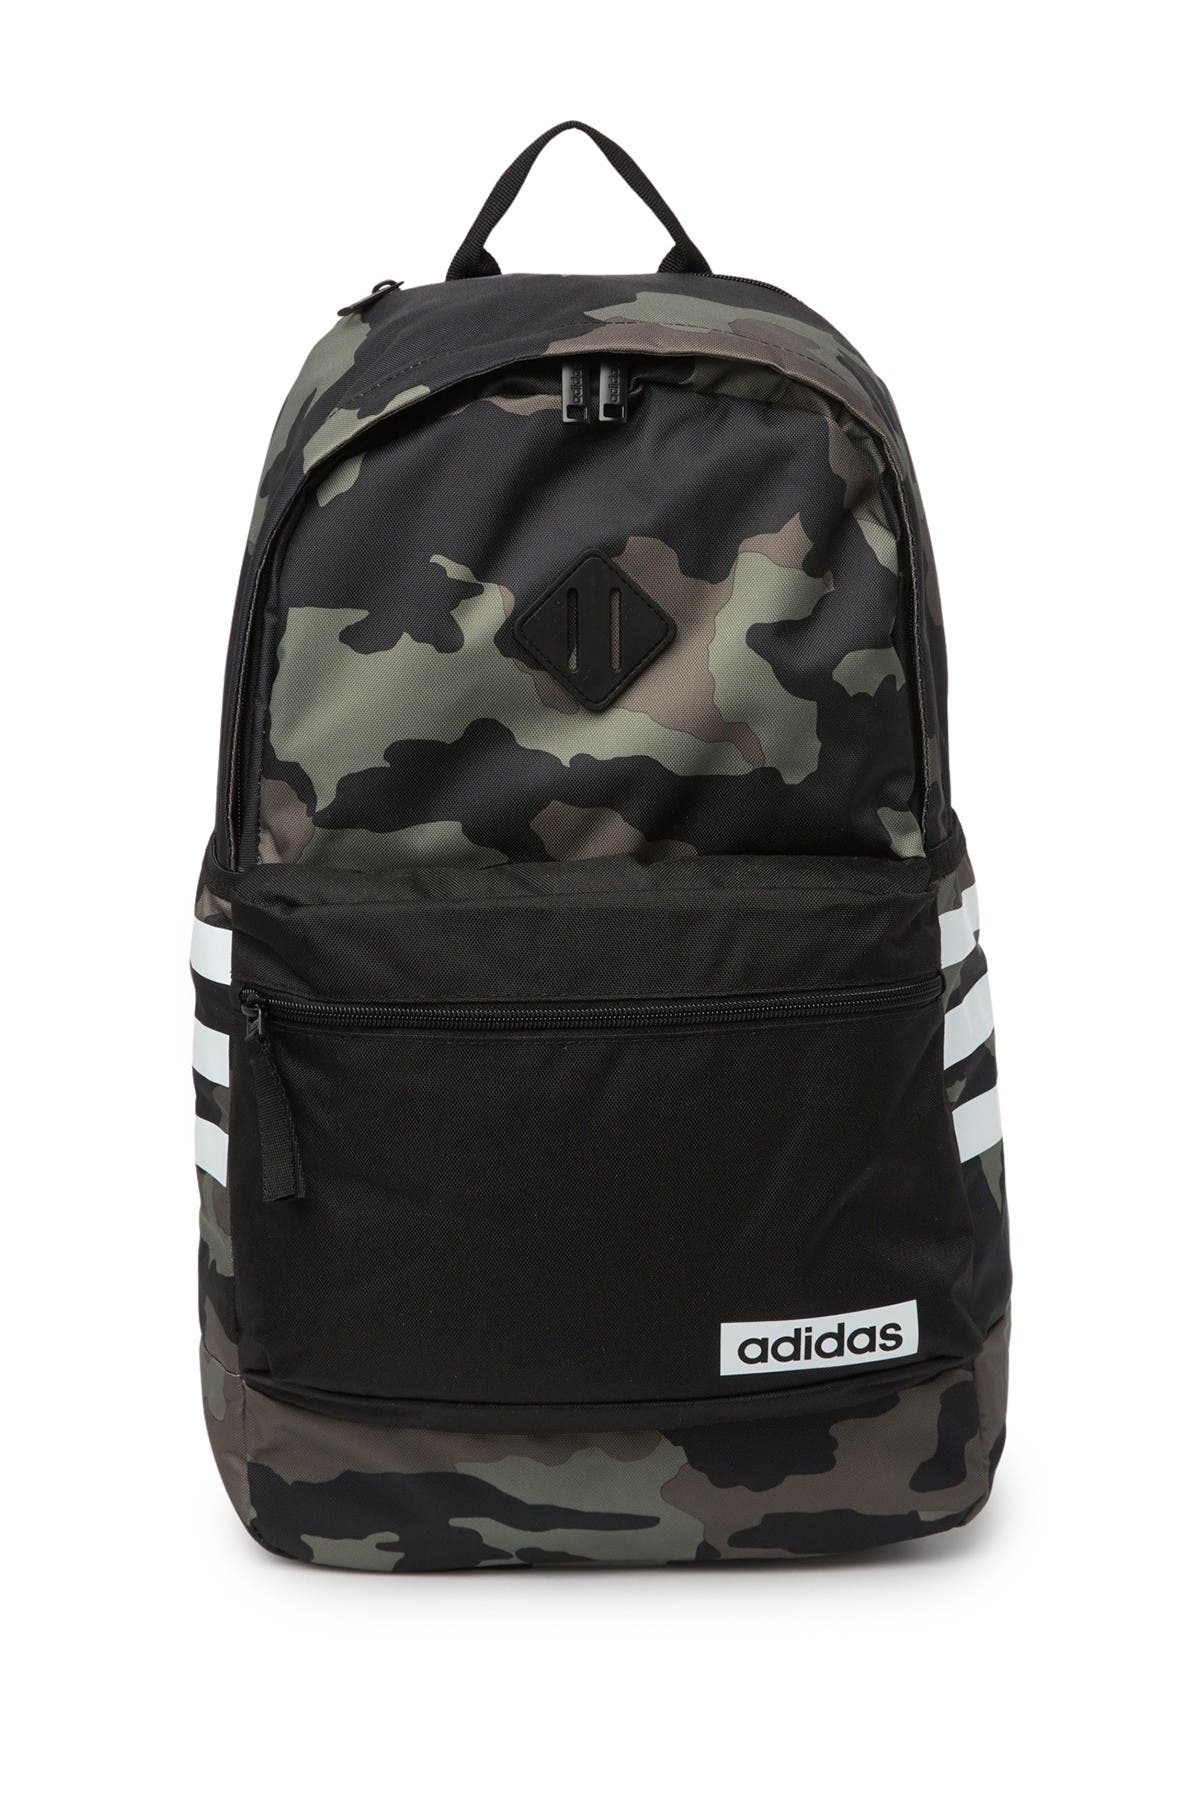 adidas classic 3s iii backpack